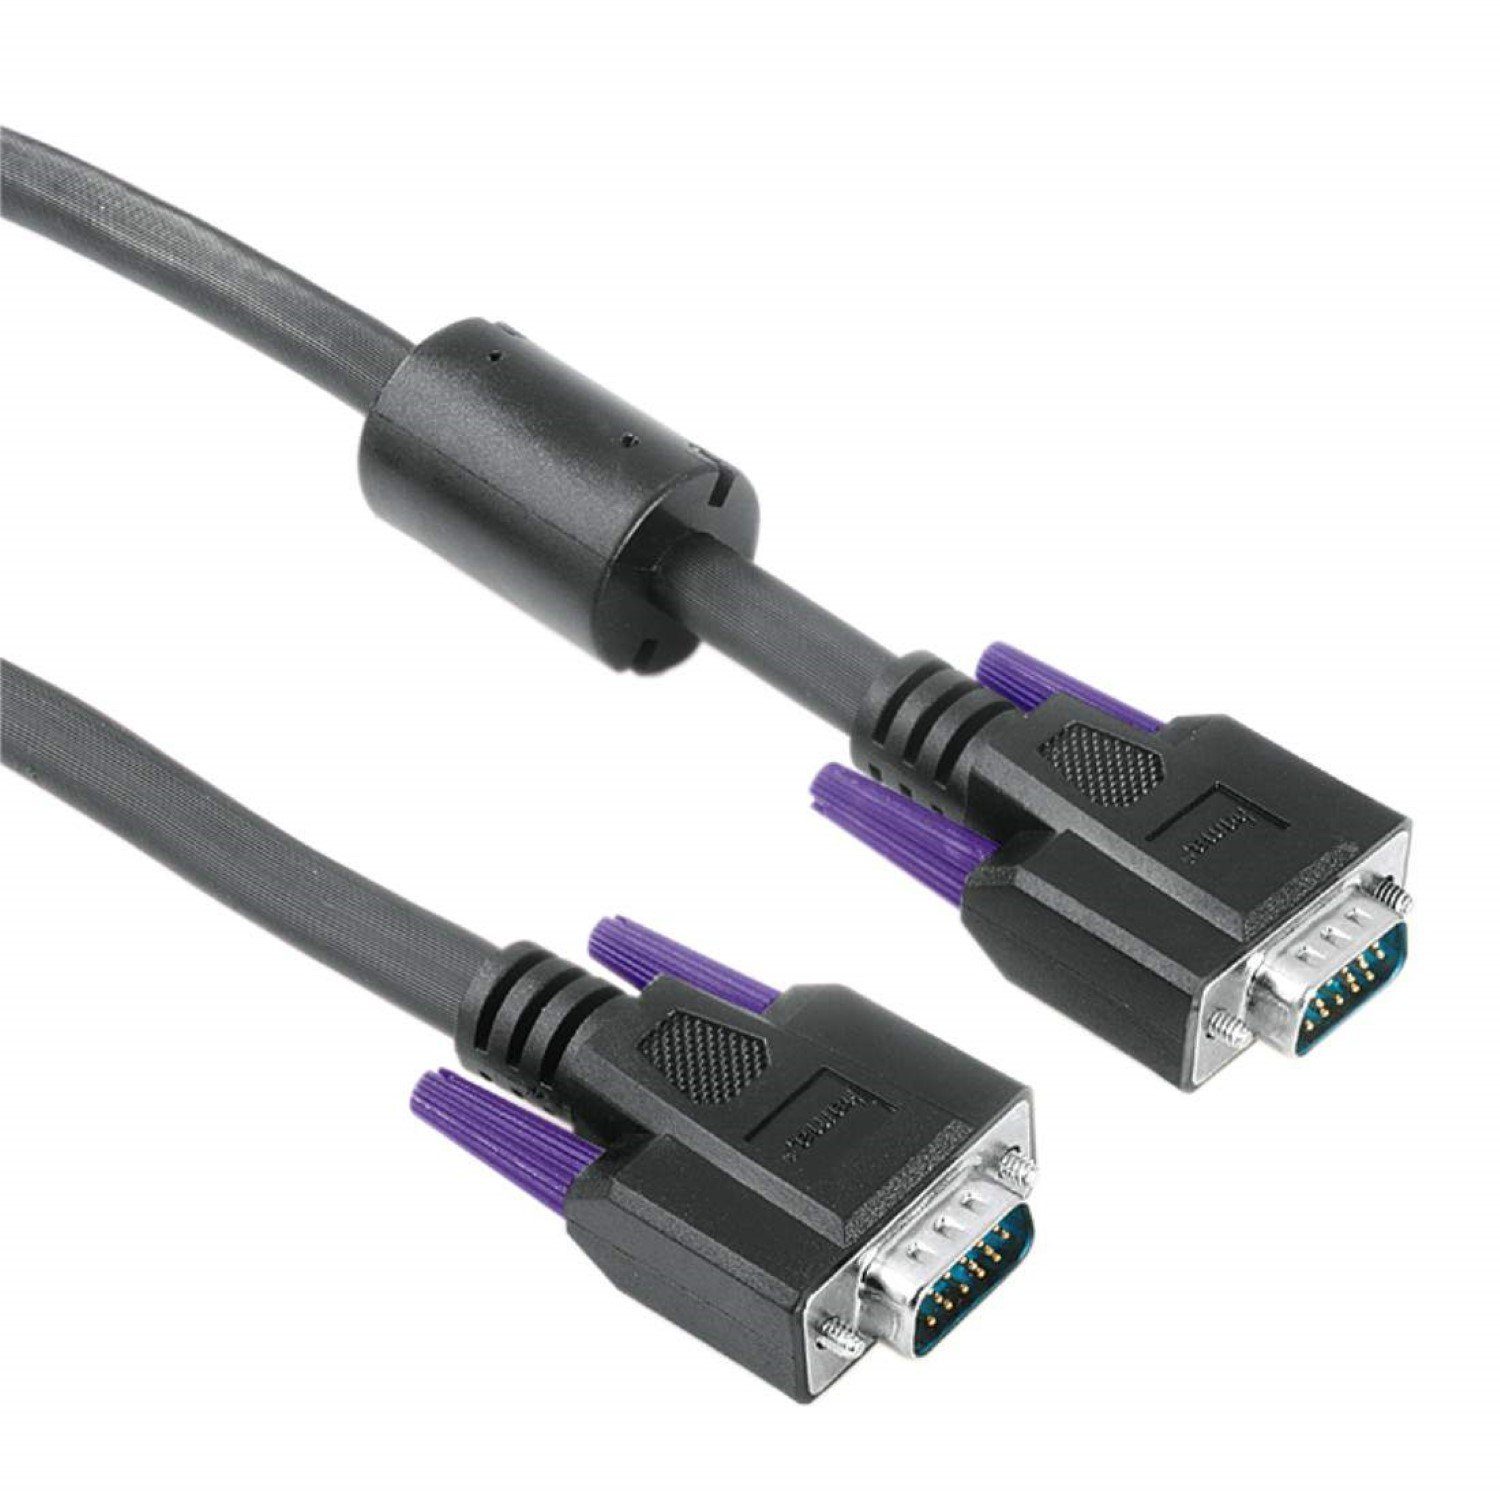 Hama 5m VGA-Kabel Monitor-Kabel HDD-Stecker 15-pol Video-Kabel, VGA, (500 cm), Anschlusskabel mit VGA HDD-Stecker für TV, Beamer, PC, Bildschirm etc.